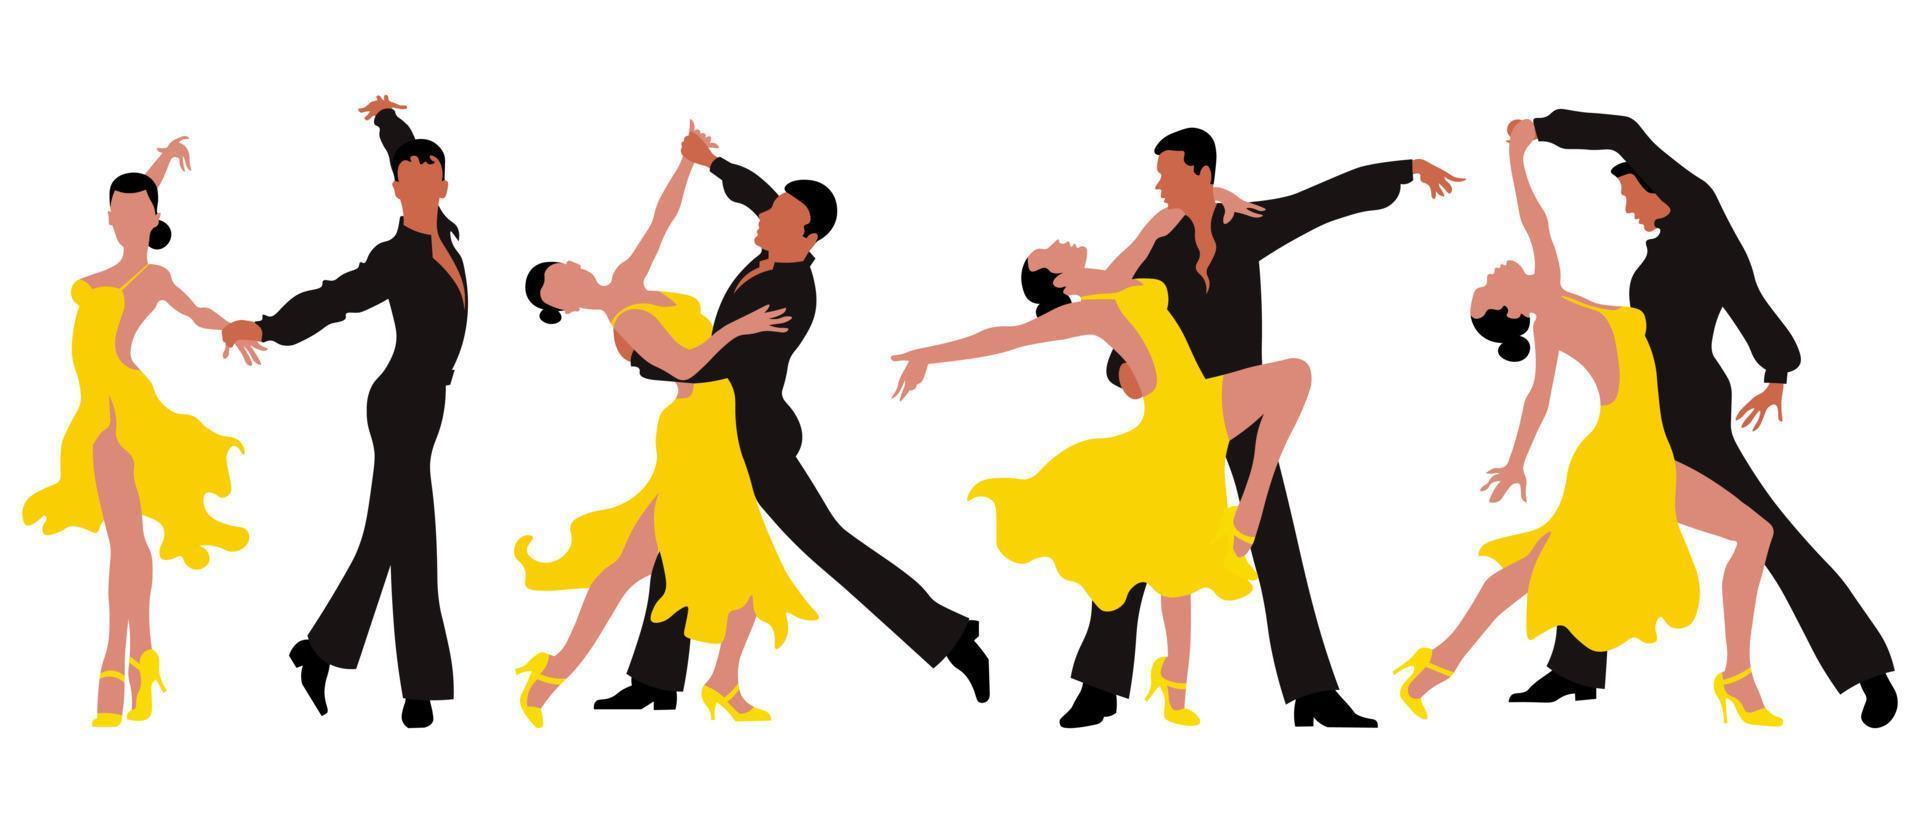 una serie di illustrazioni, coppie danzanti, un uomo in nero e una donna in abito giallo in pose eleganti. poster, stampa, cartolina vettore